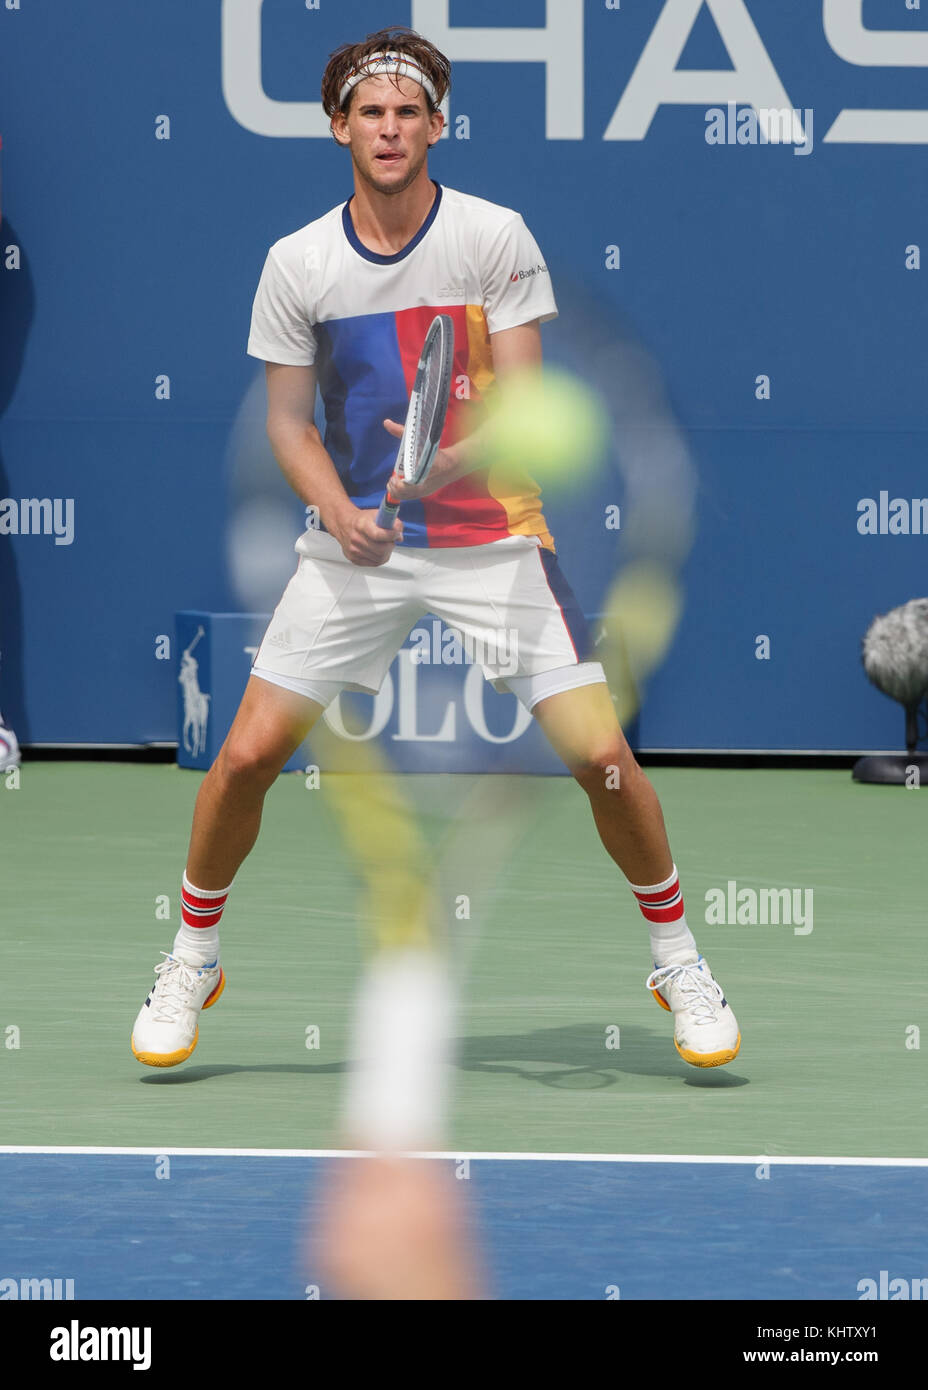 Austrian tennis player Dominic thiem (Aut) für wartende servieren bei US Open Tennis Championship 2017, New York City, New York, United States. Stockfoto